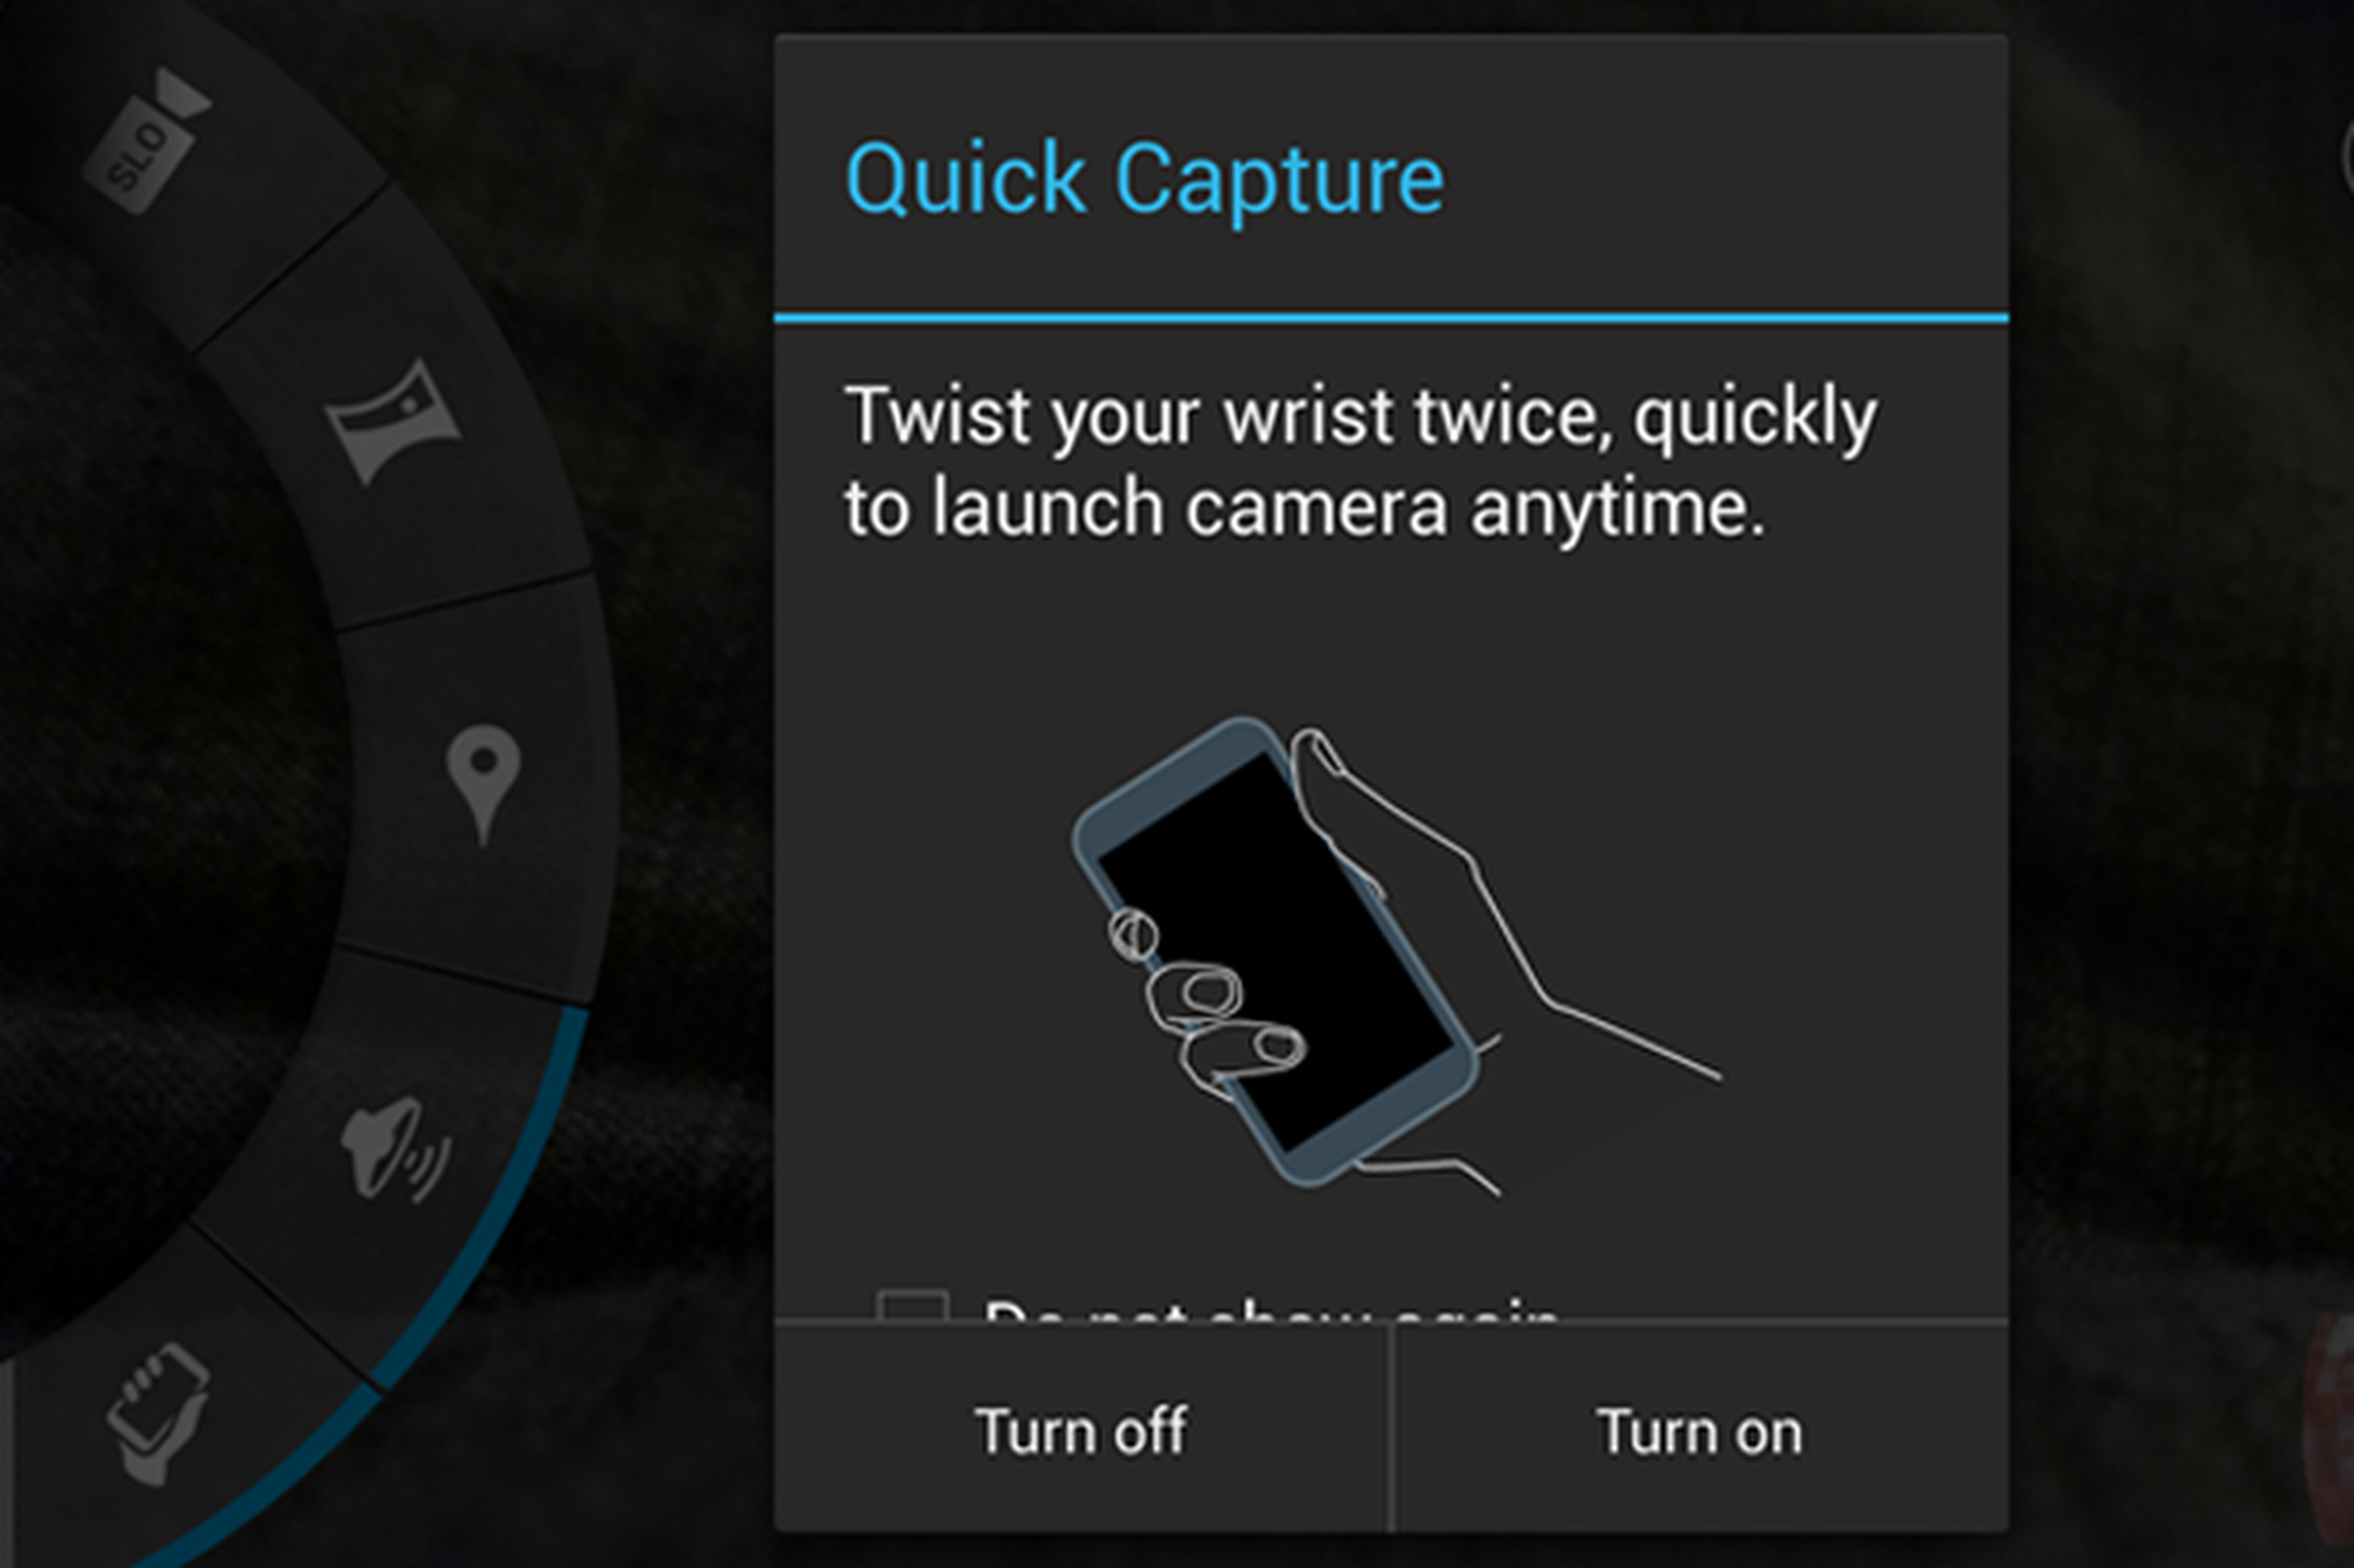 ¿Quieres ver la interfaz de la cámara del Motorola Moto X?